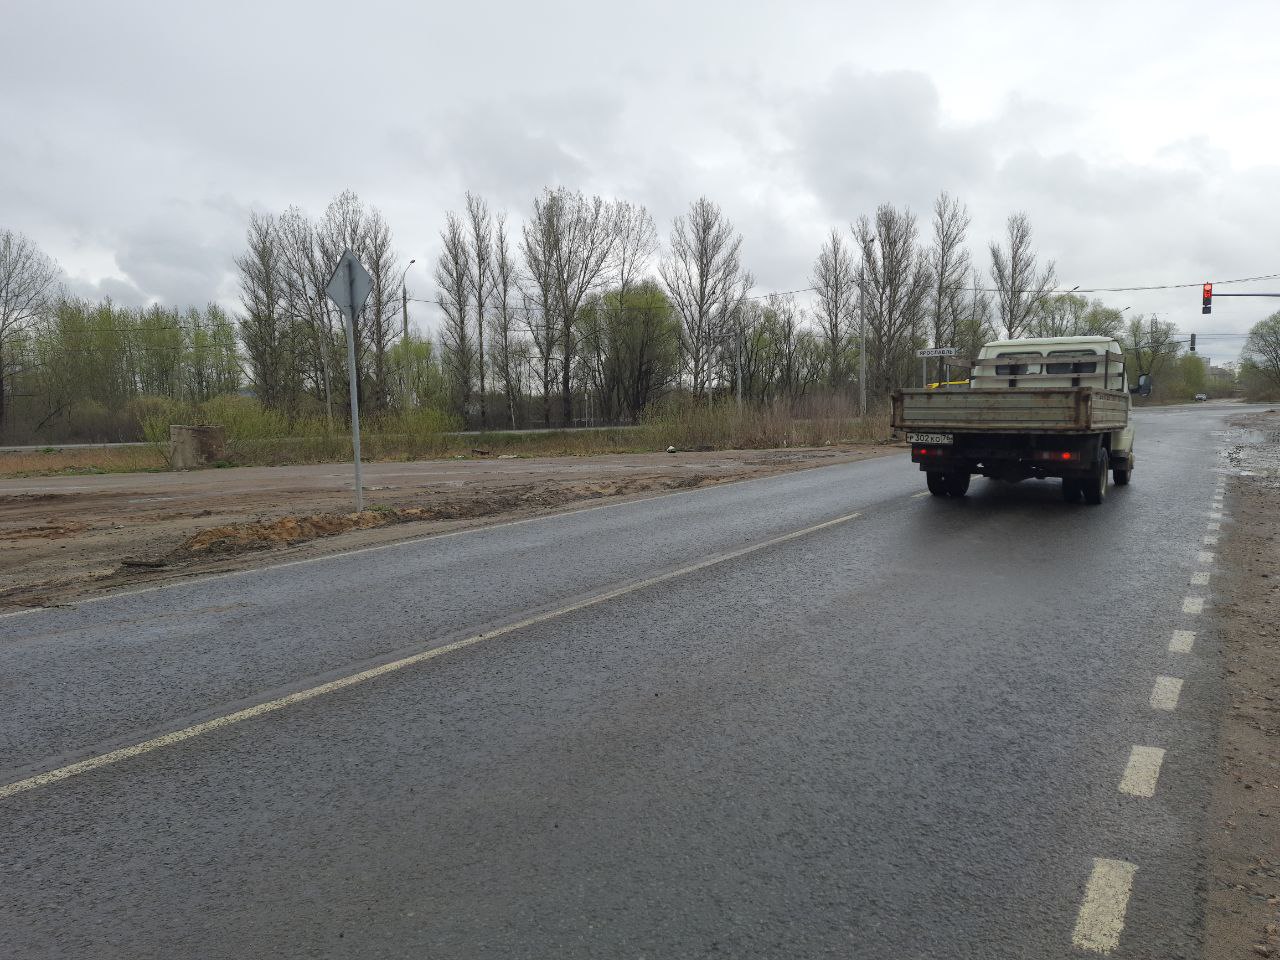 Недостатки на отремонтированной дороге на Перекопе в Ярославле устранят по гарантии